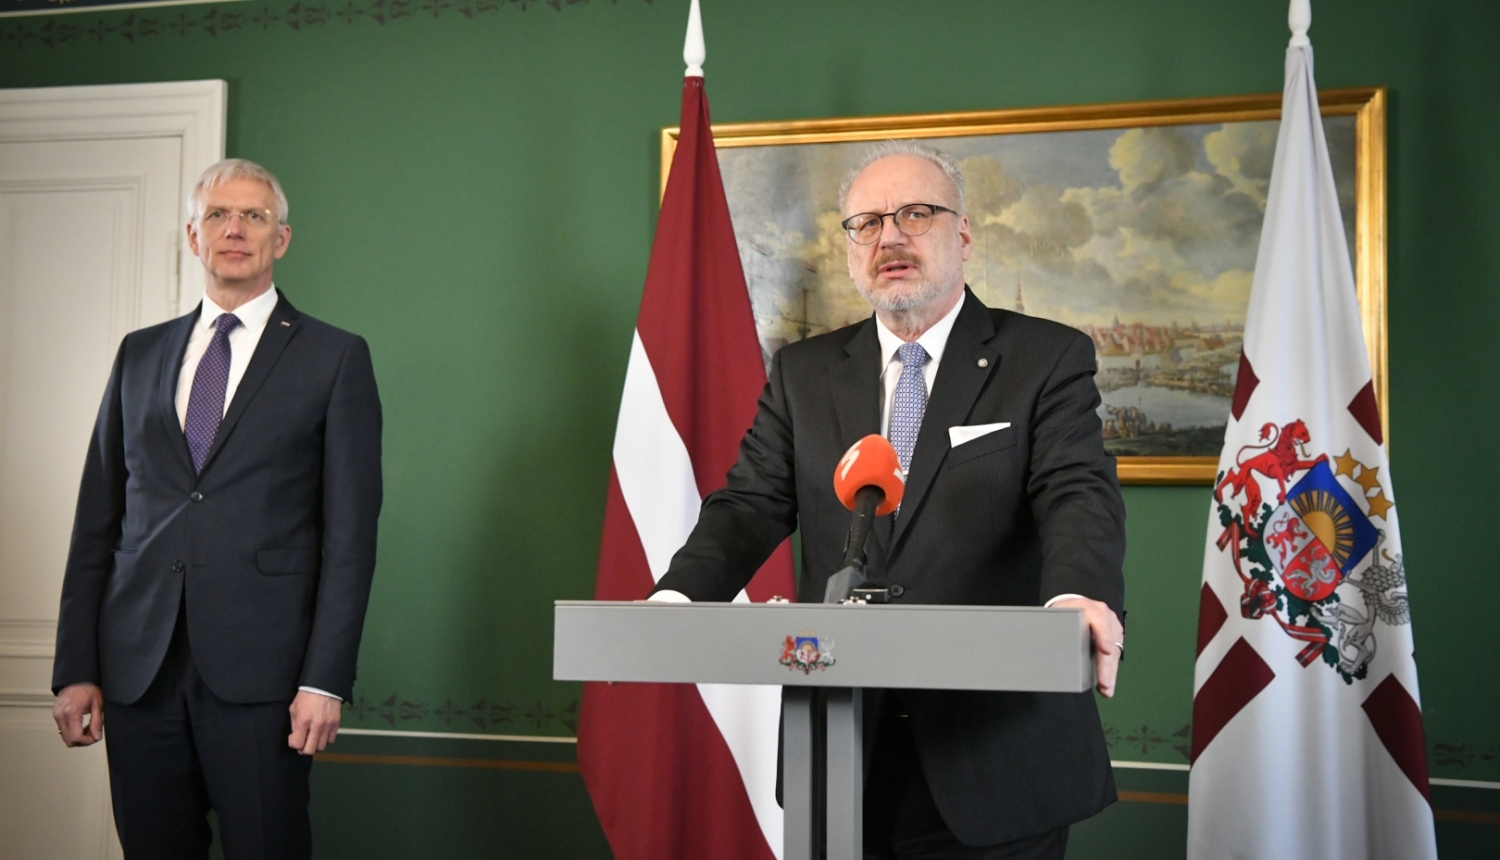 Valsts prezidents Egils Levits atbild uz mediju jautājumiem Rīgas pils Rīgas istabā. Pa kreisi no viņa stāv Ministru prezidents Krišjānis Kariņš. 